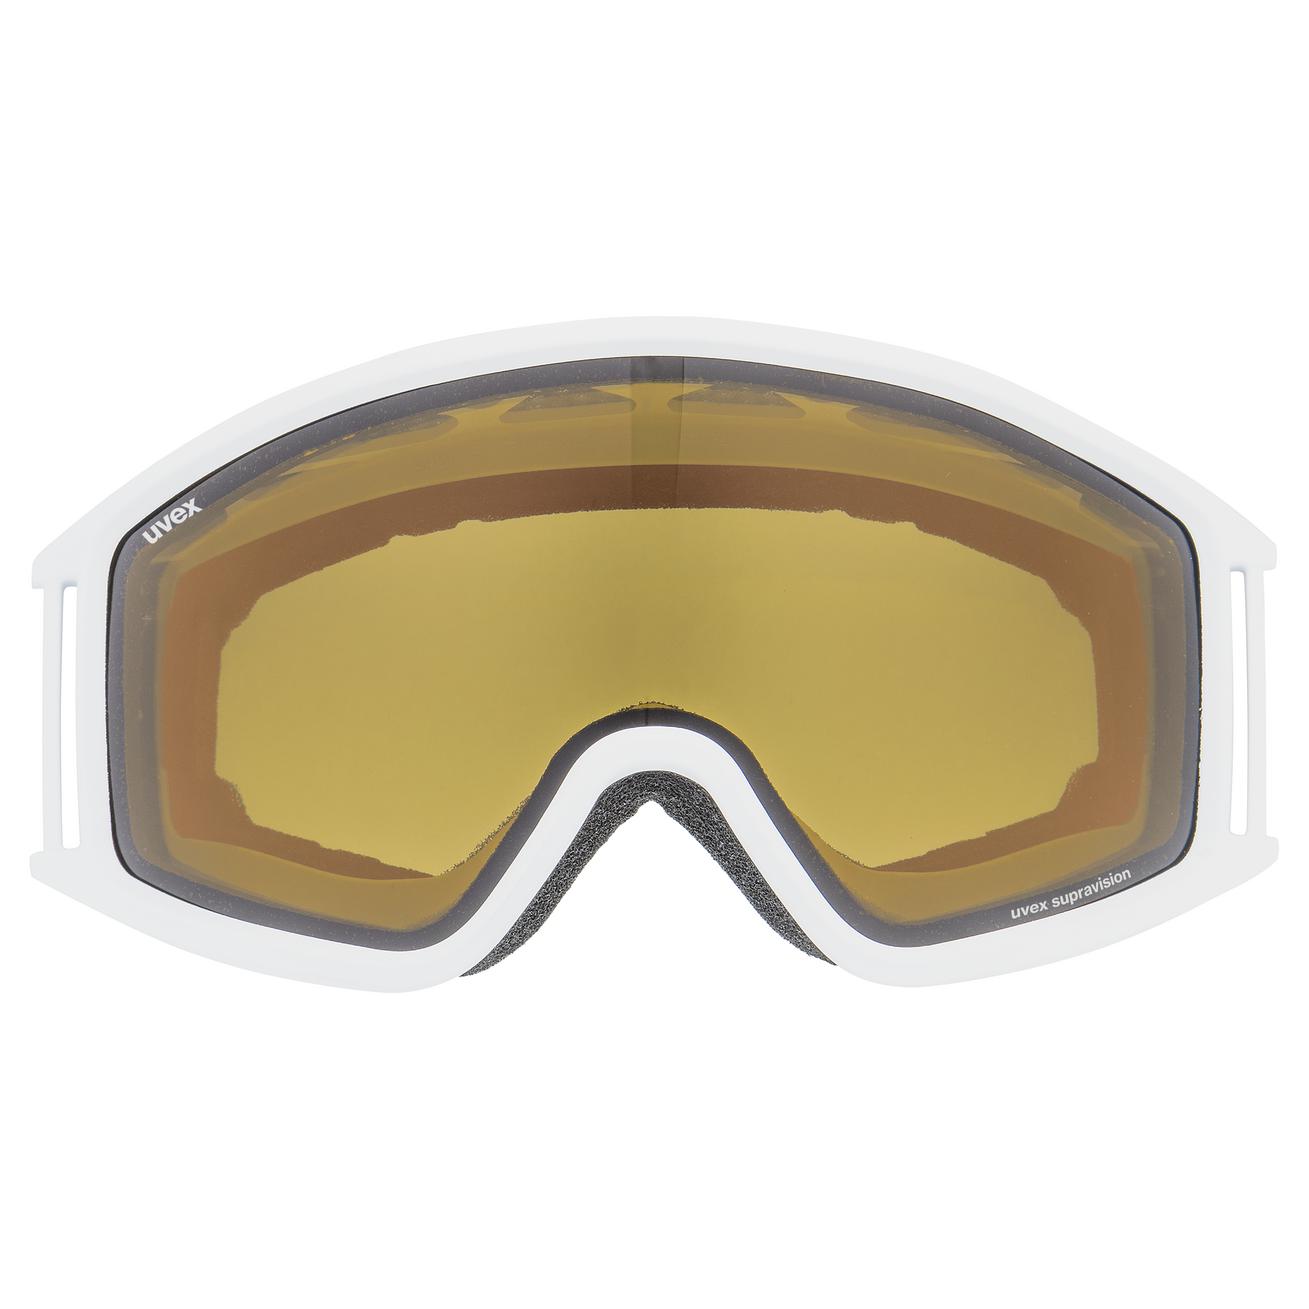 uvex g.gl 3000 LGL white | Ski goggles | uvex sports